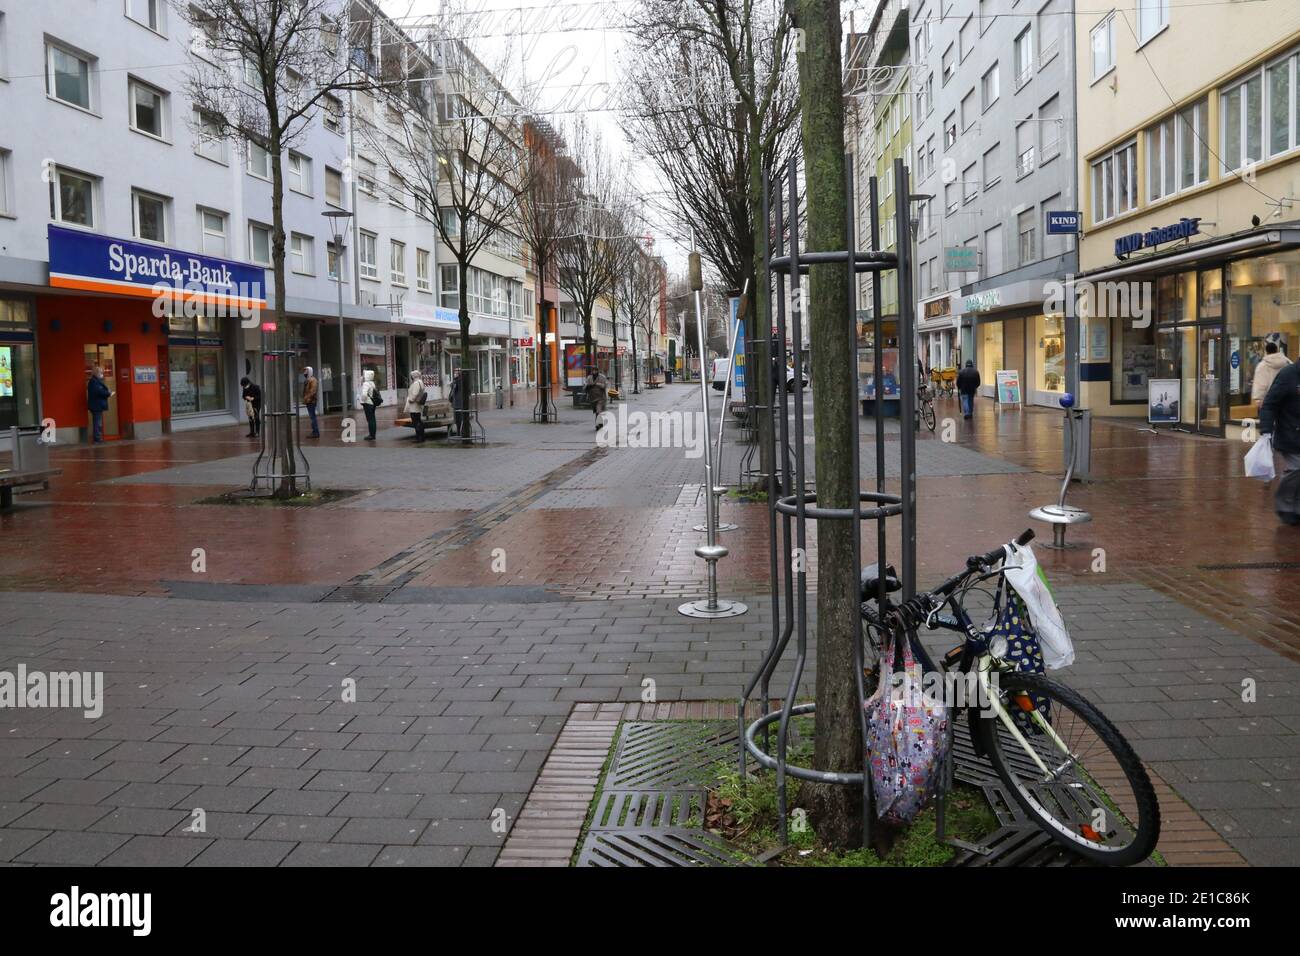 Symbolhaft für die Corona-Tristesse in Deutschland: Die menschenleere Fußgängerzone in Ludwigshafen (Rheinland-Pfalz) Stock Photo